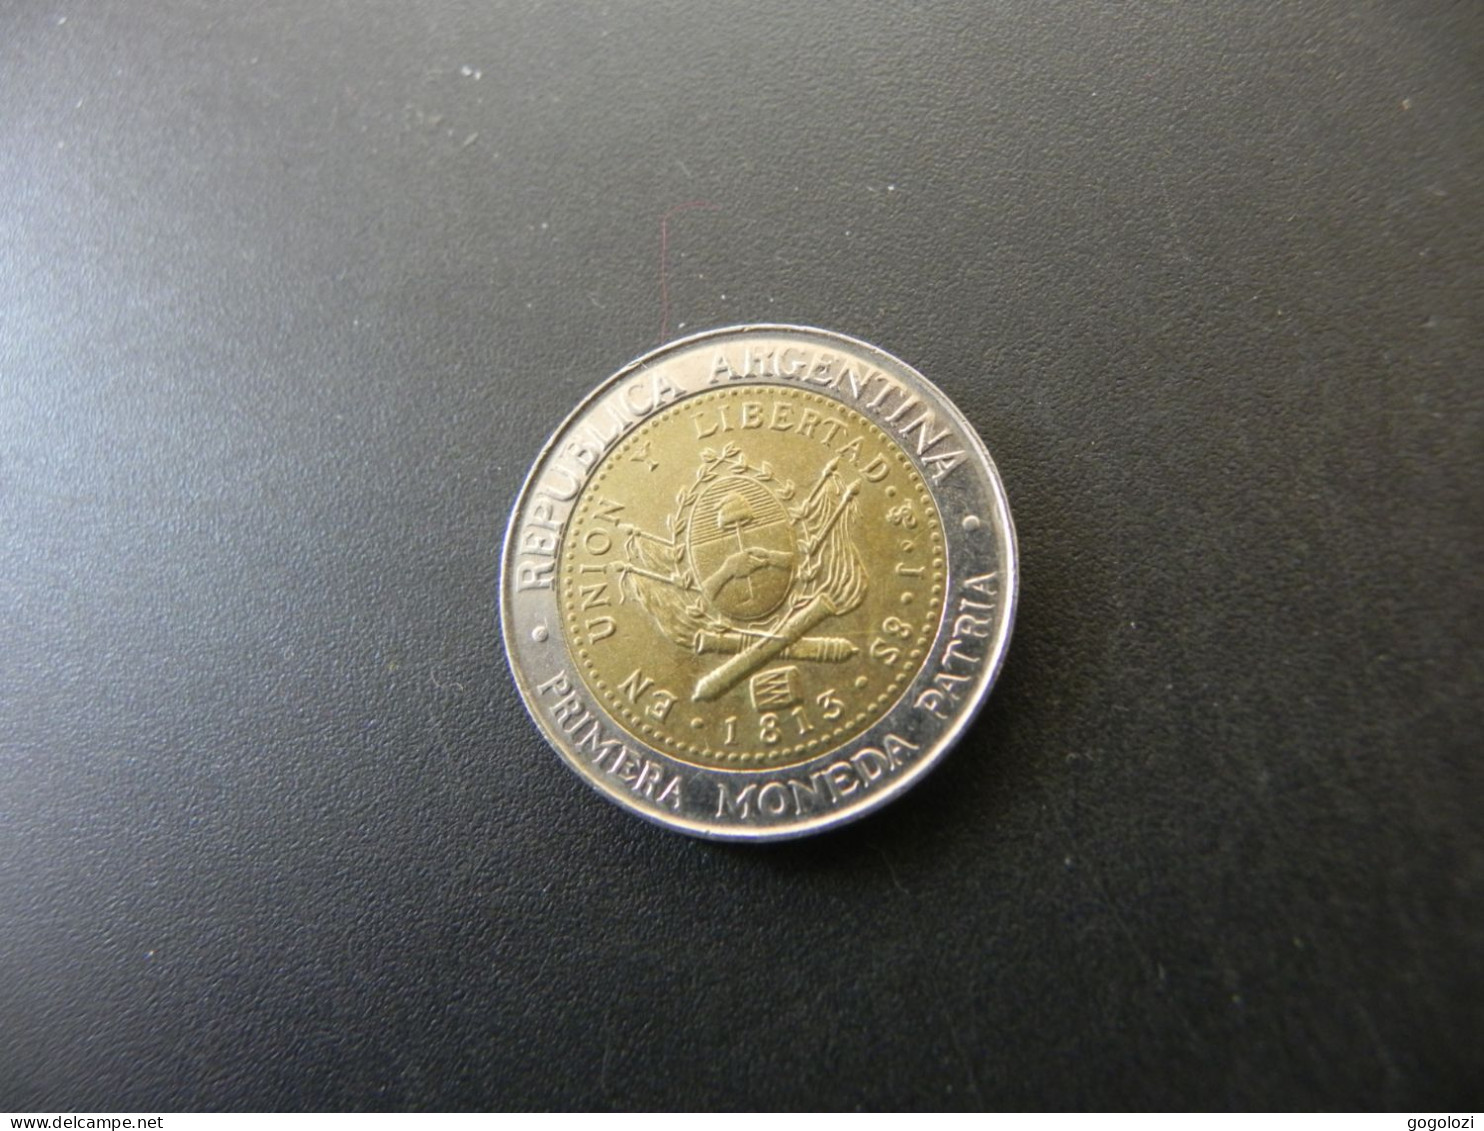 Argentina 1 Peso 2016 - Argentina